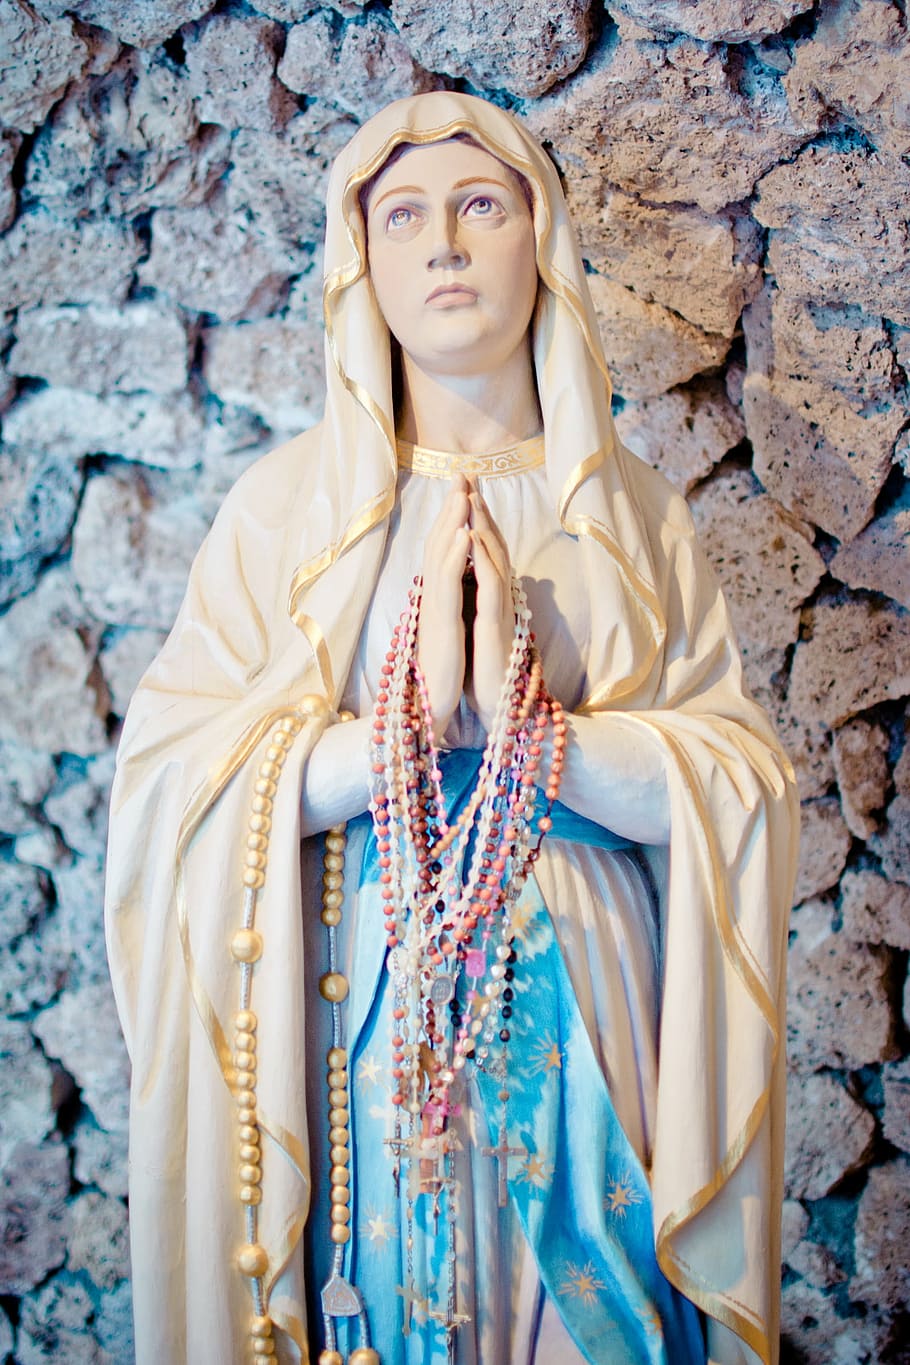 聖母マリア像, マリア, 聖, 母, マドンナ, 図, 信仰, 像, 女性, 聖母マリア